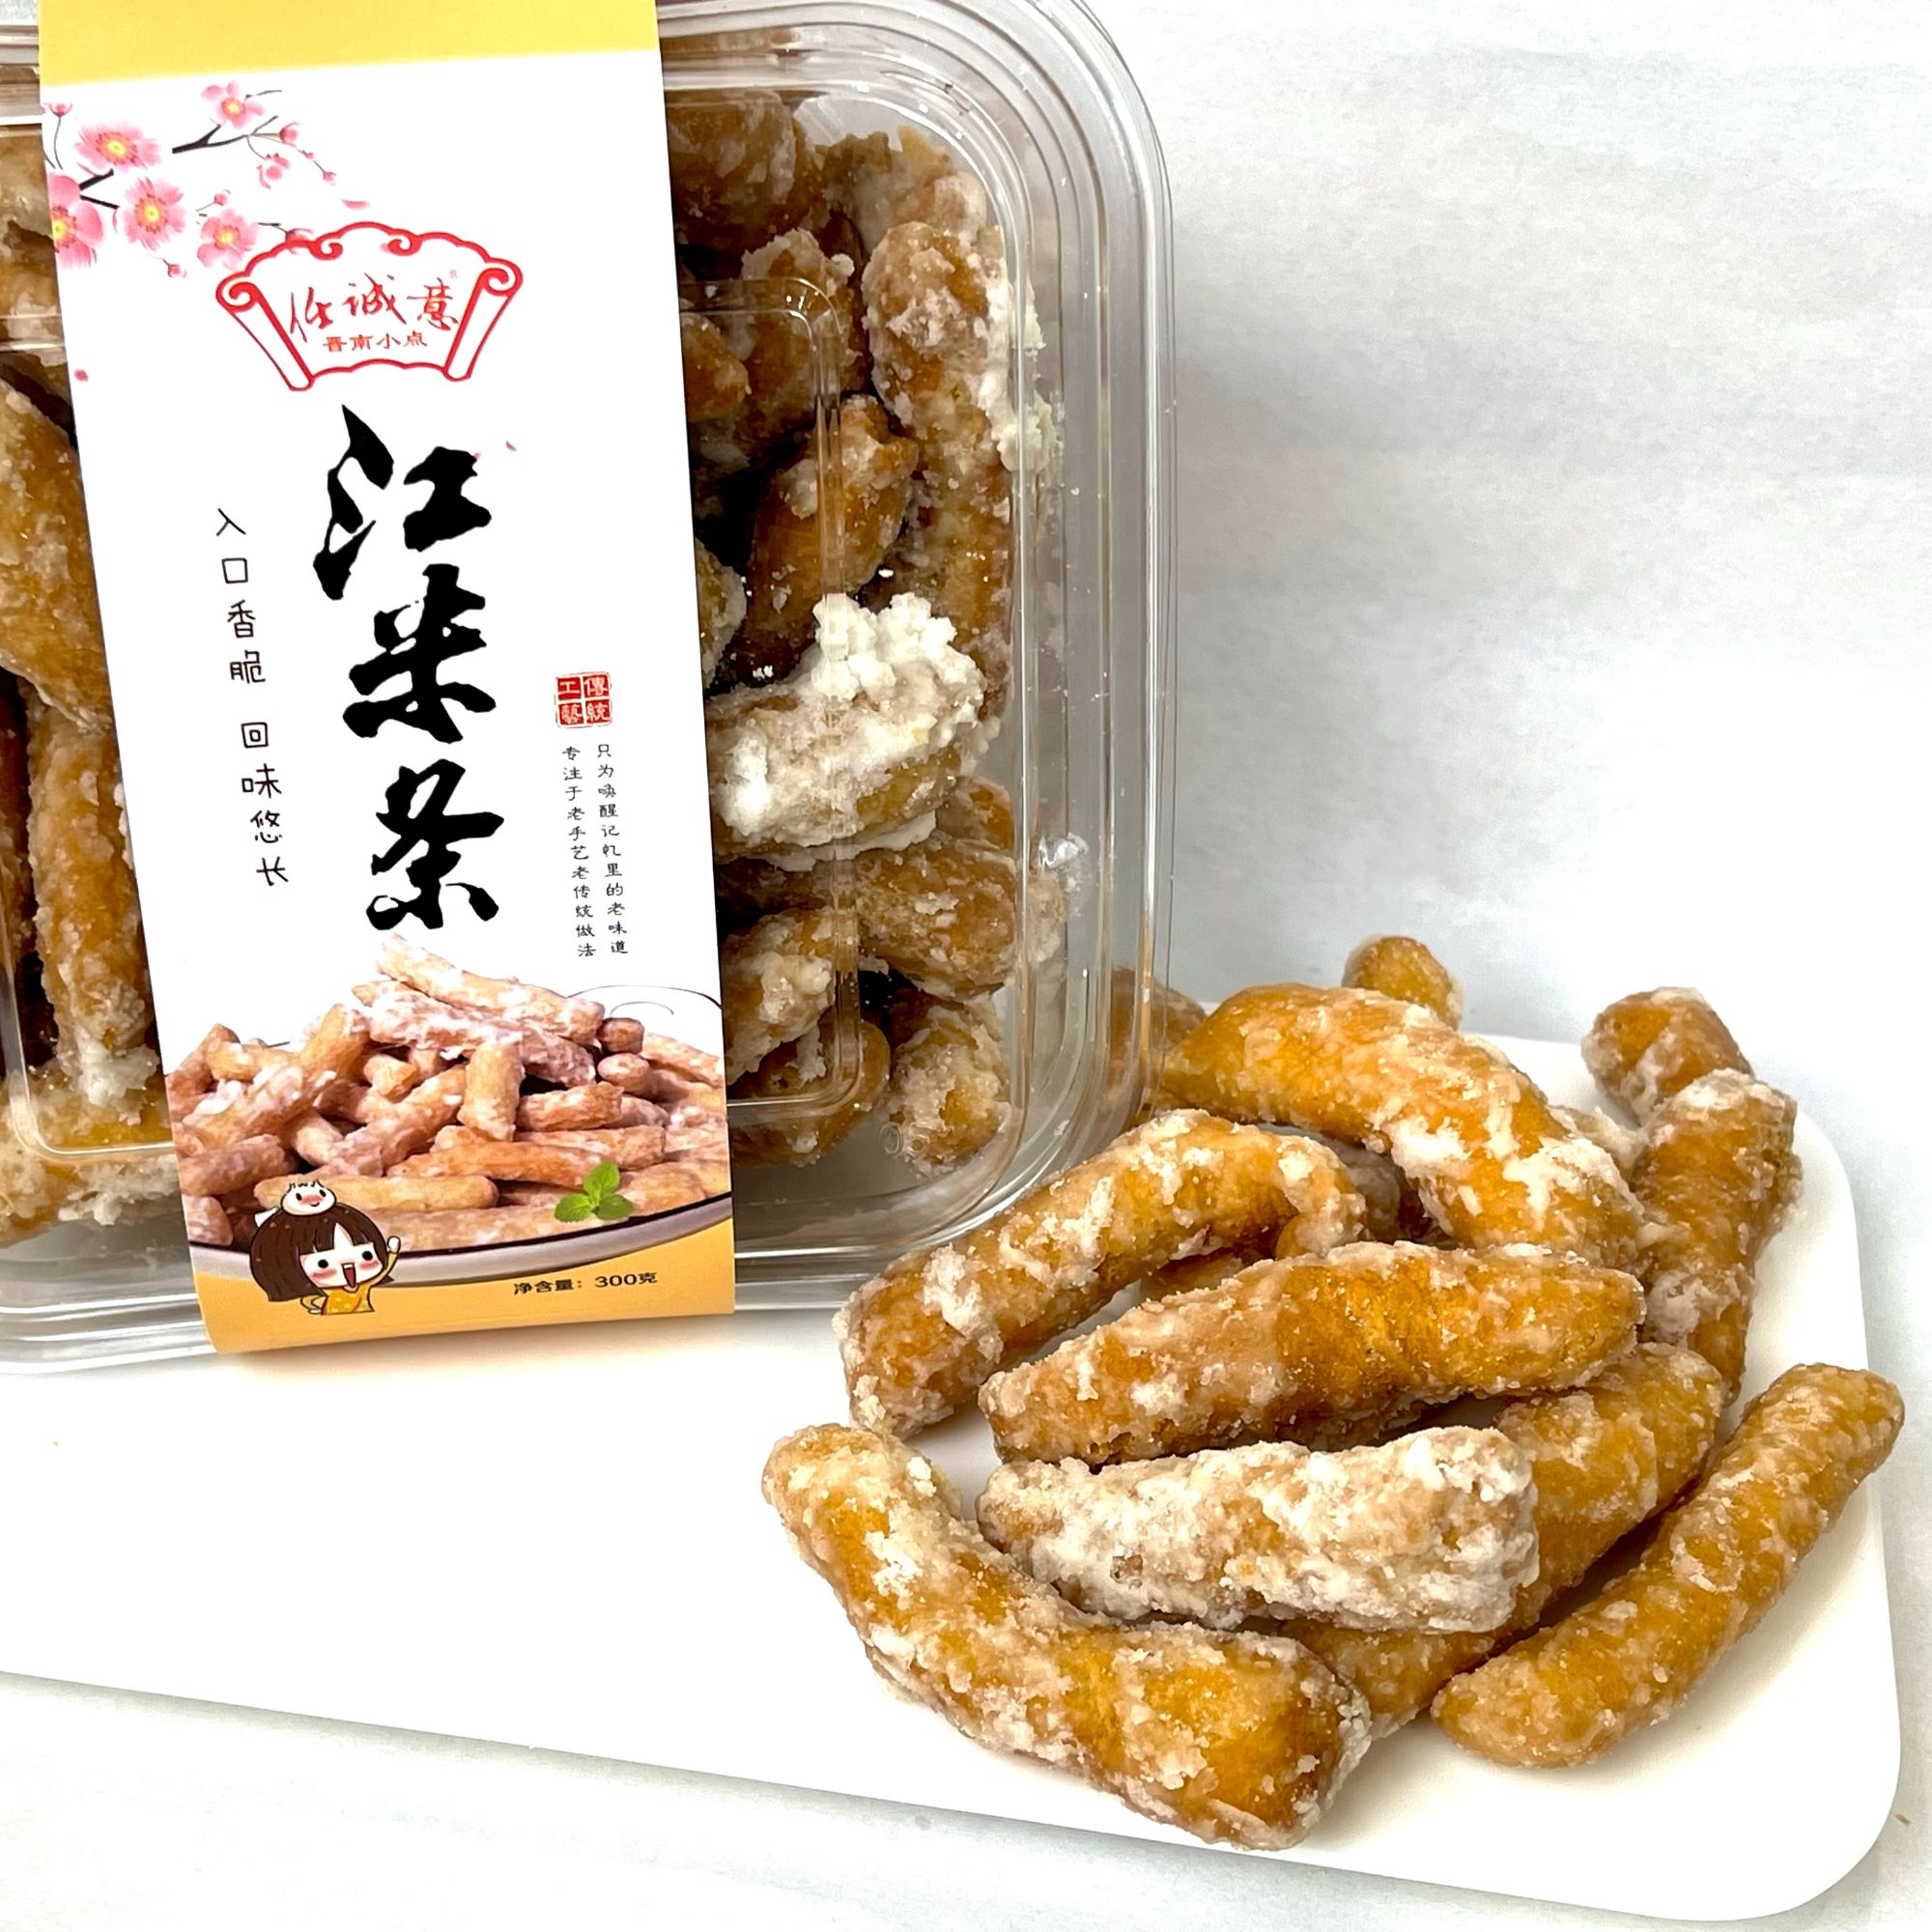 传统中式糕点任诚意系列江米条老式点心酥性简装零食休闲娱乐食品